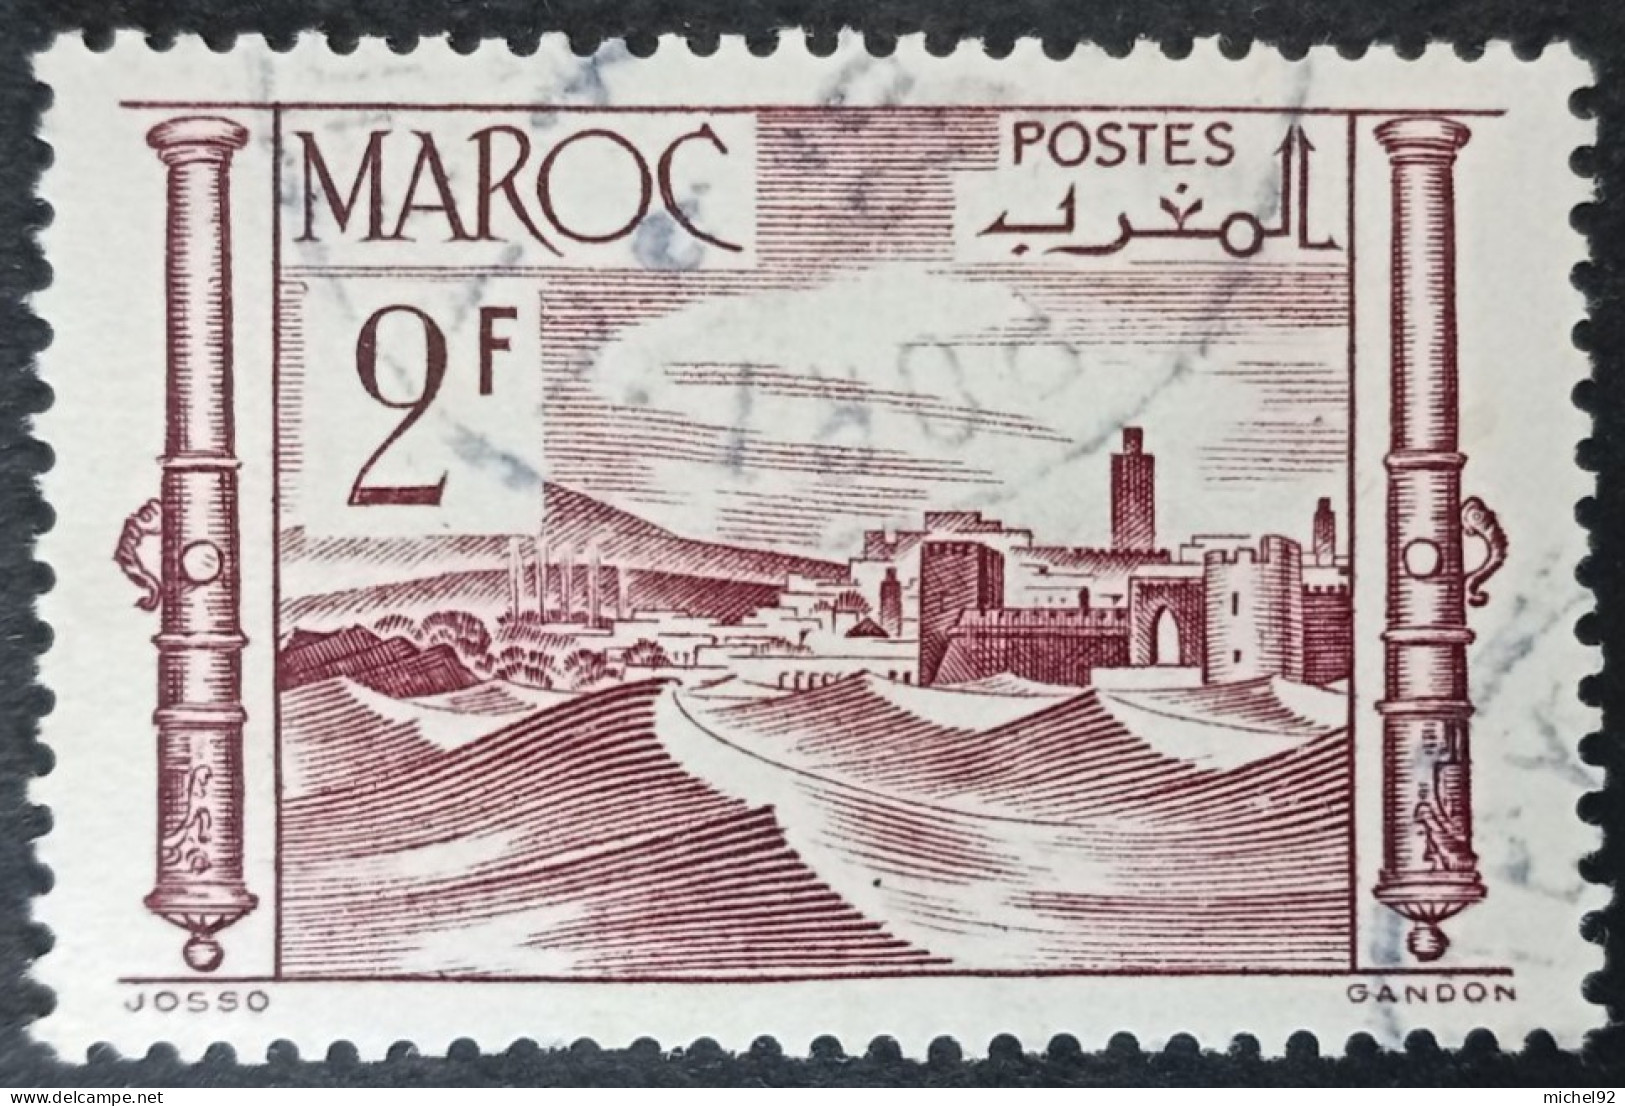 Maroc 1947-49 - YT N°253A - Oblitéré - Oblitérés